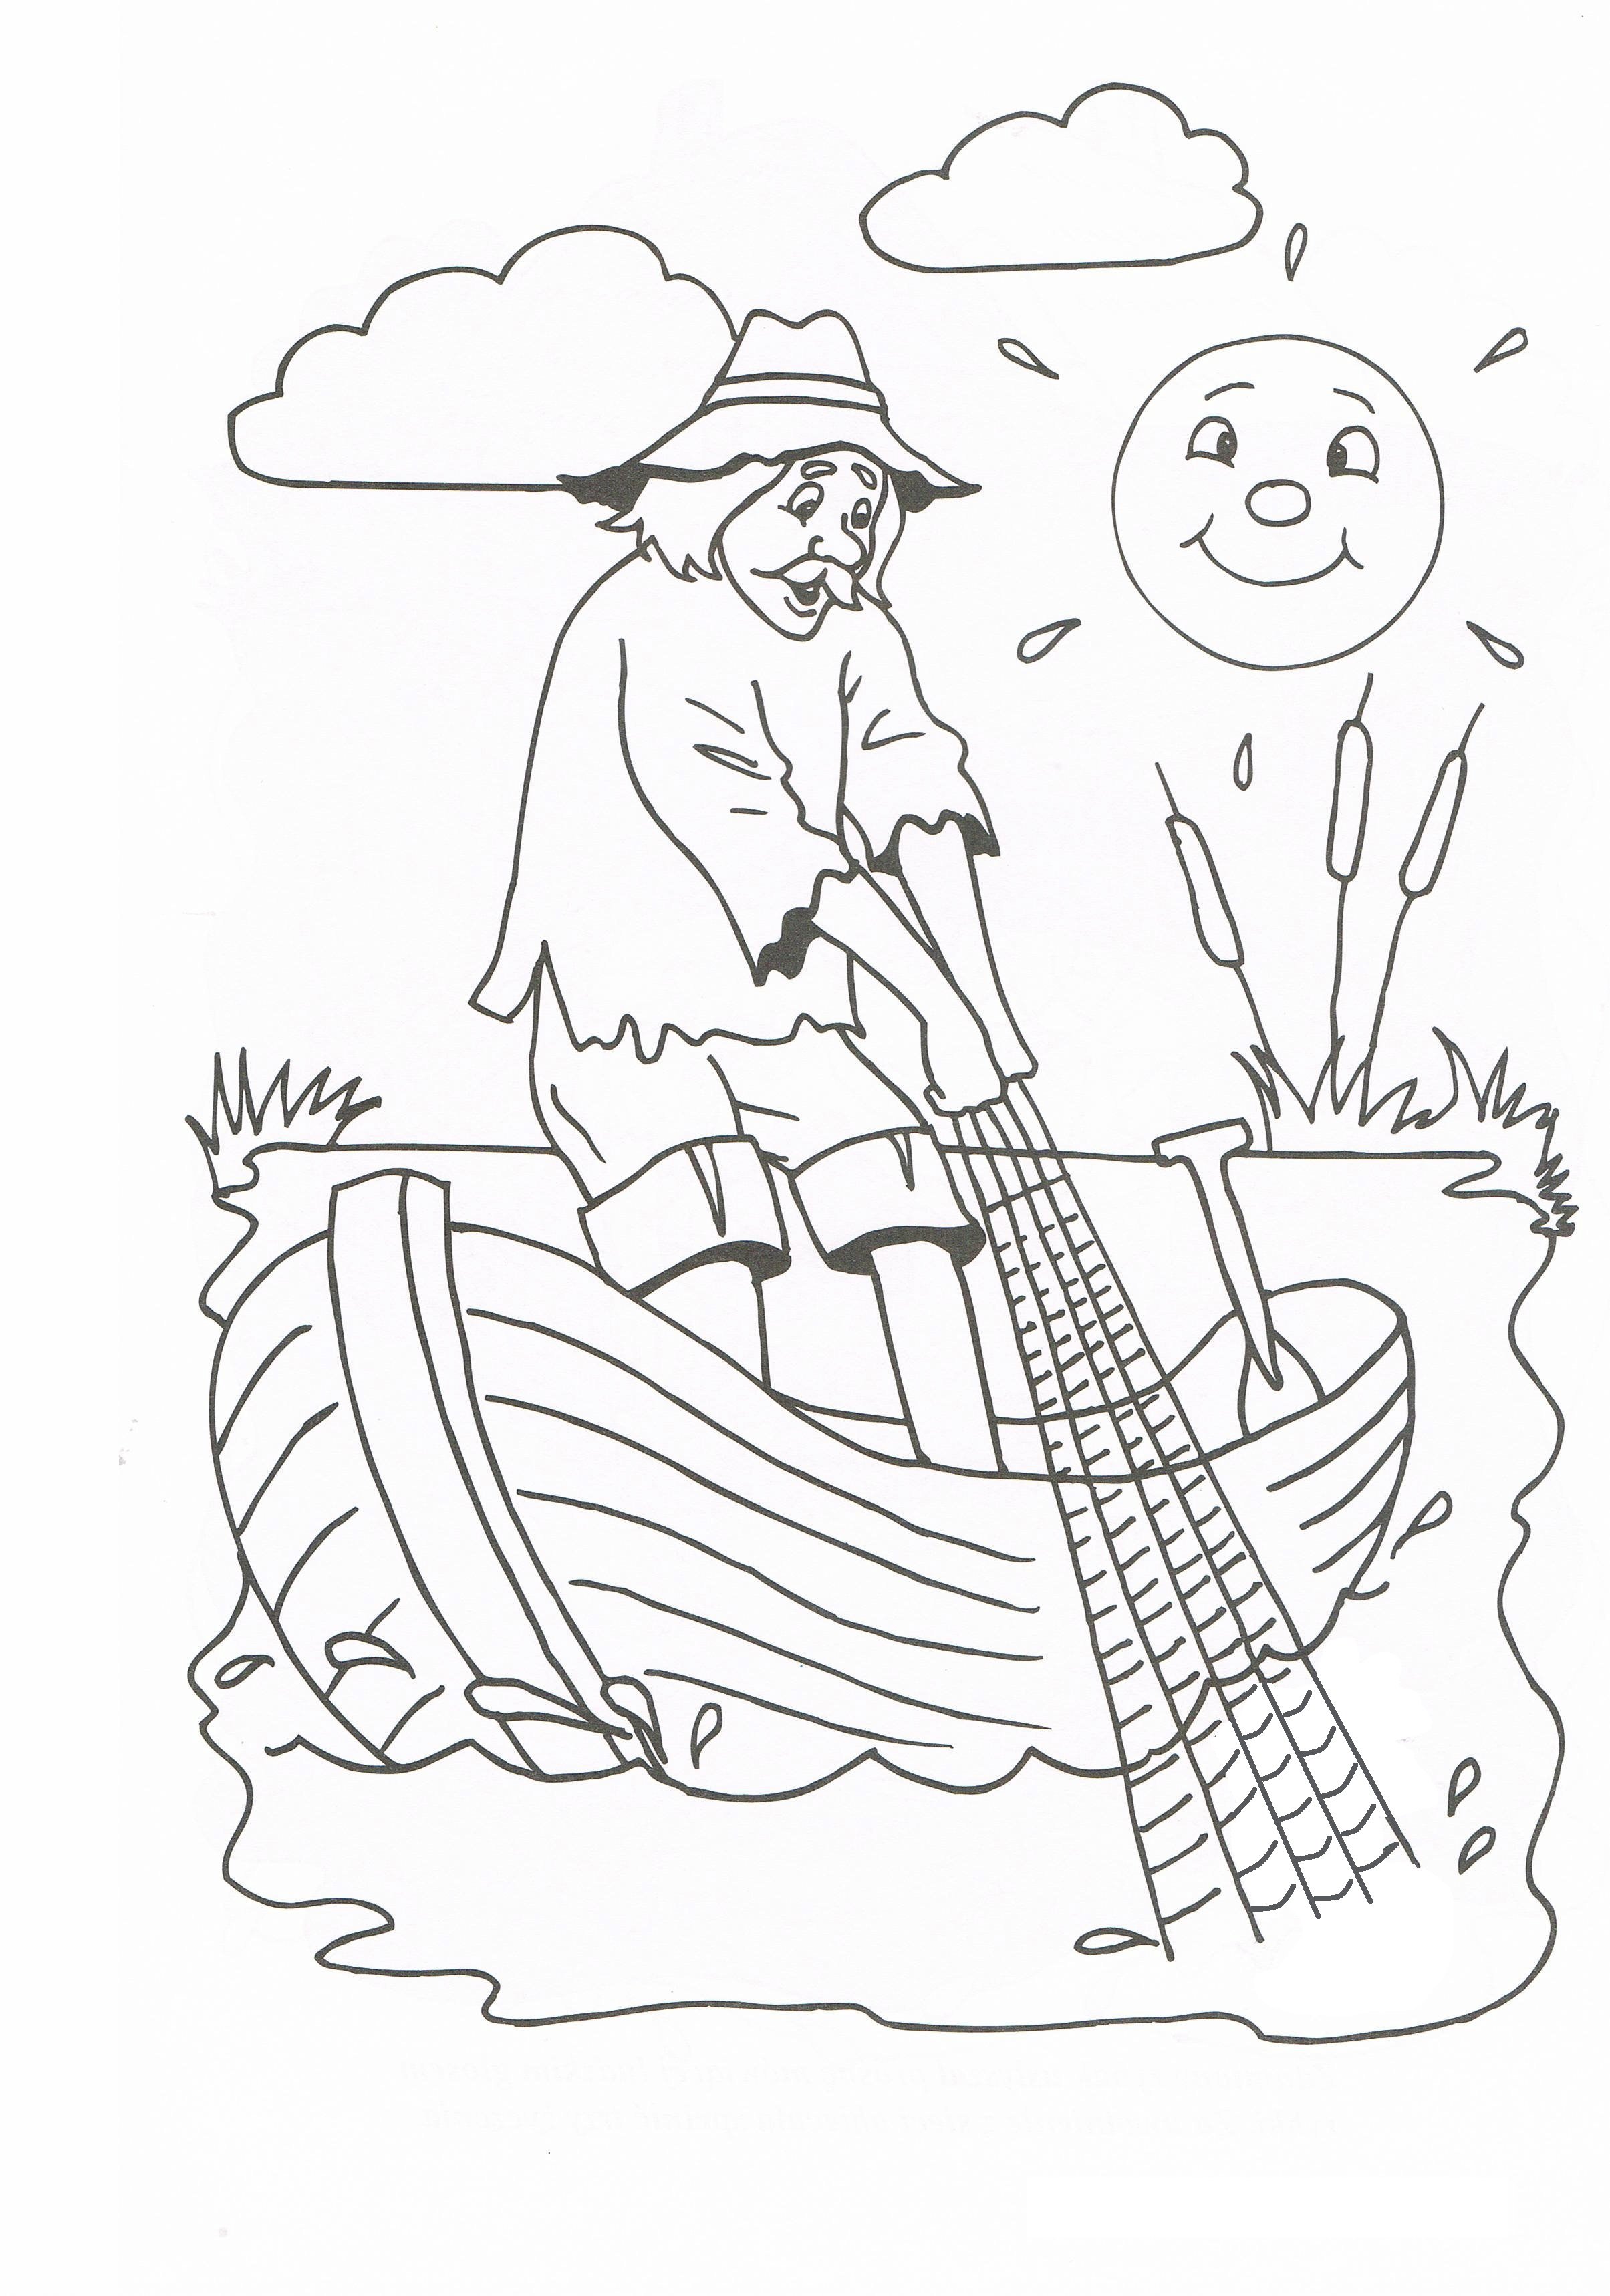 Иллюстрация к сказке о рыбаке и рыбке раскраска